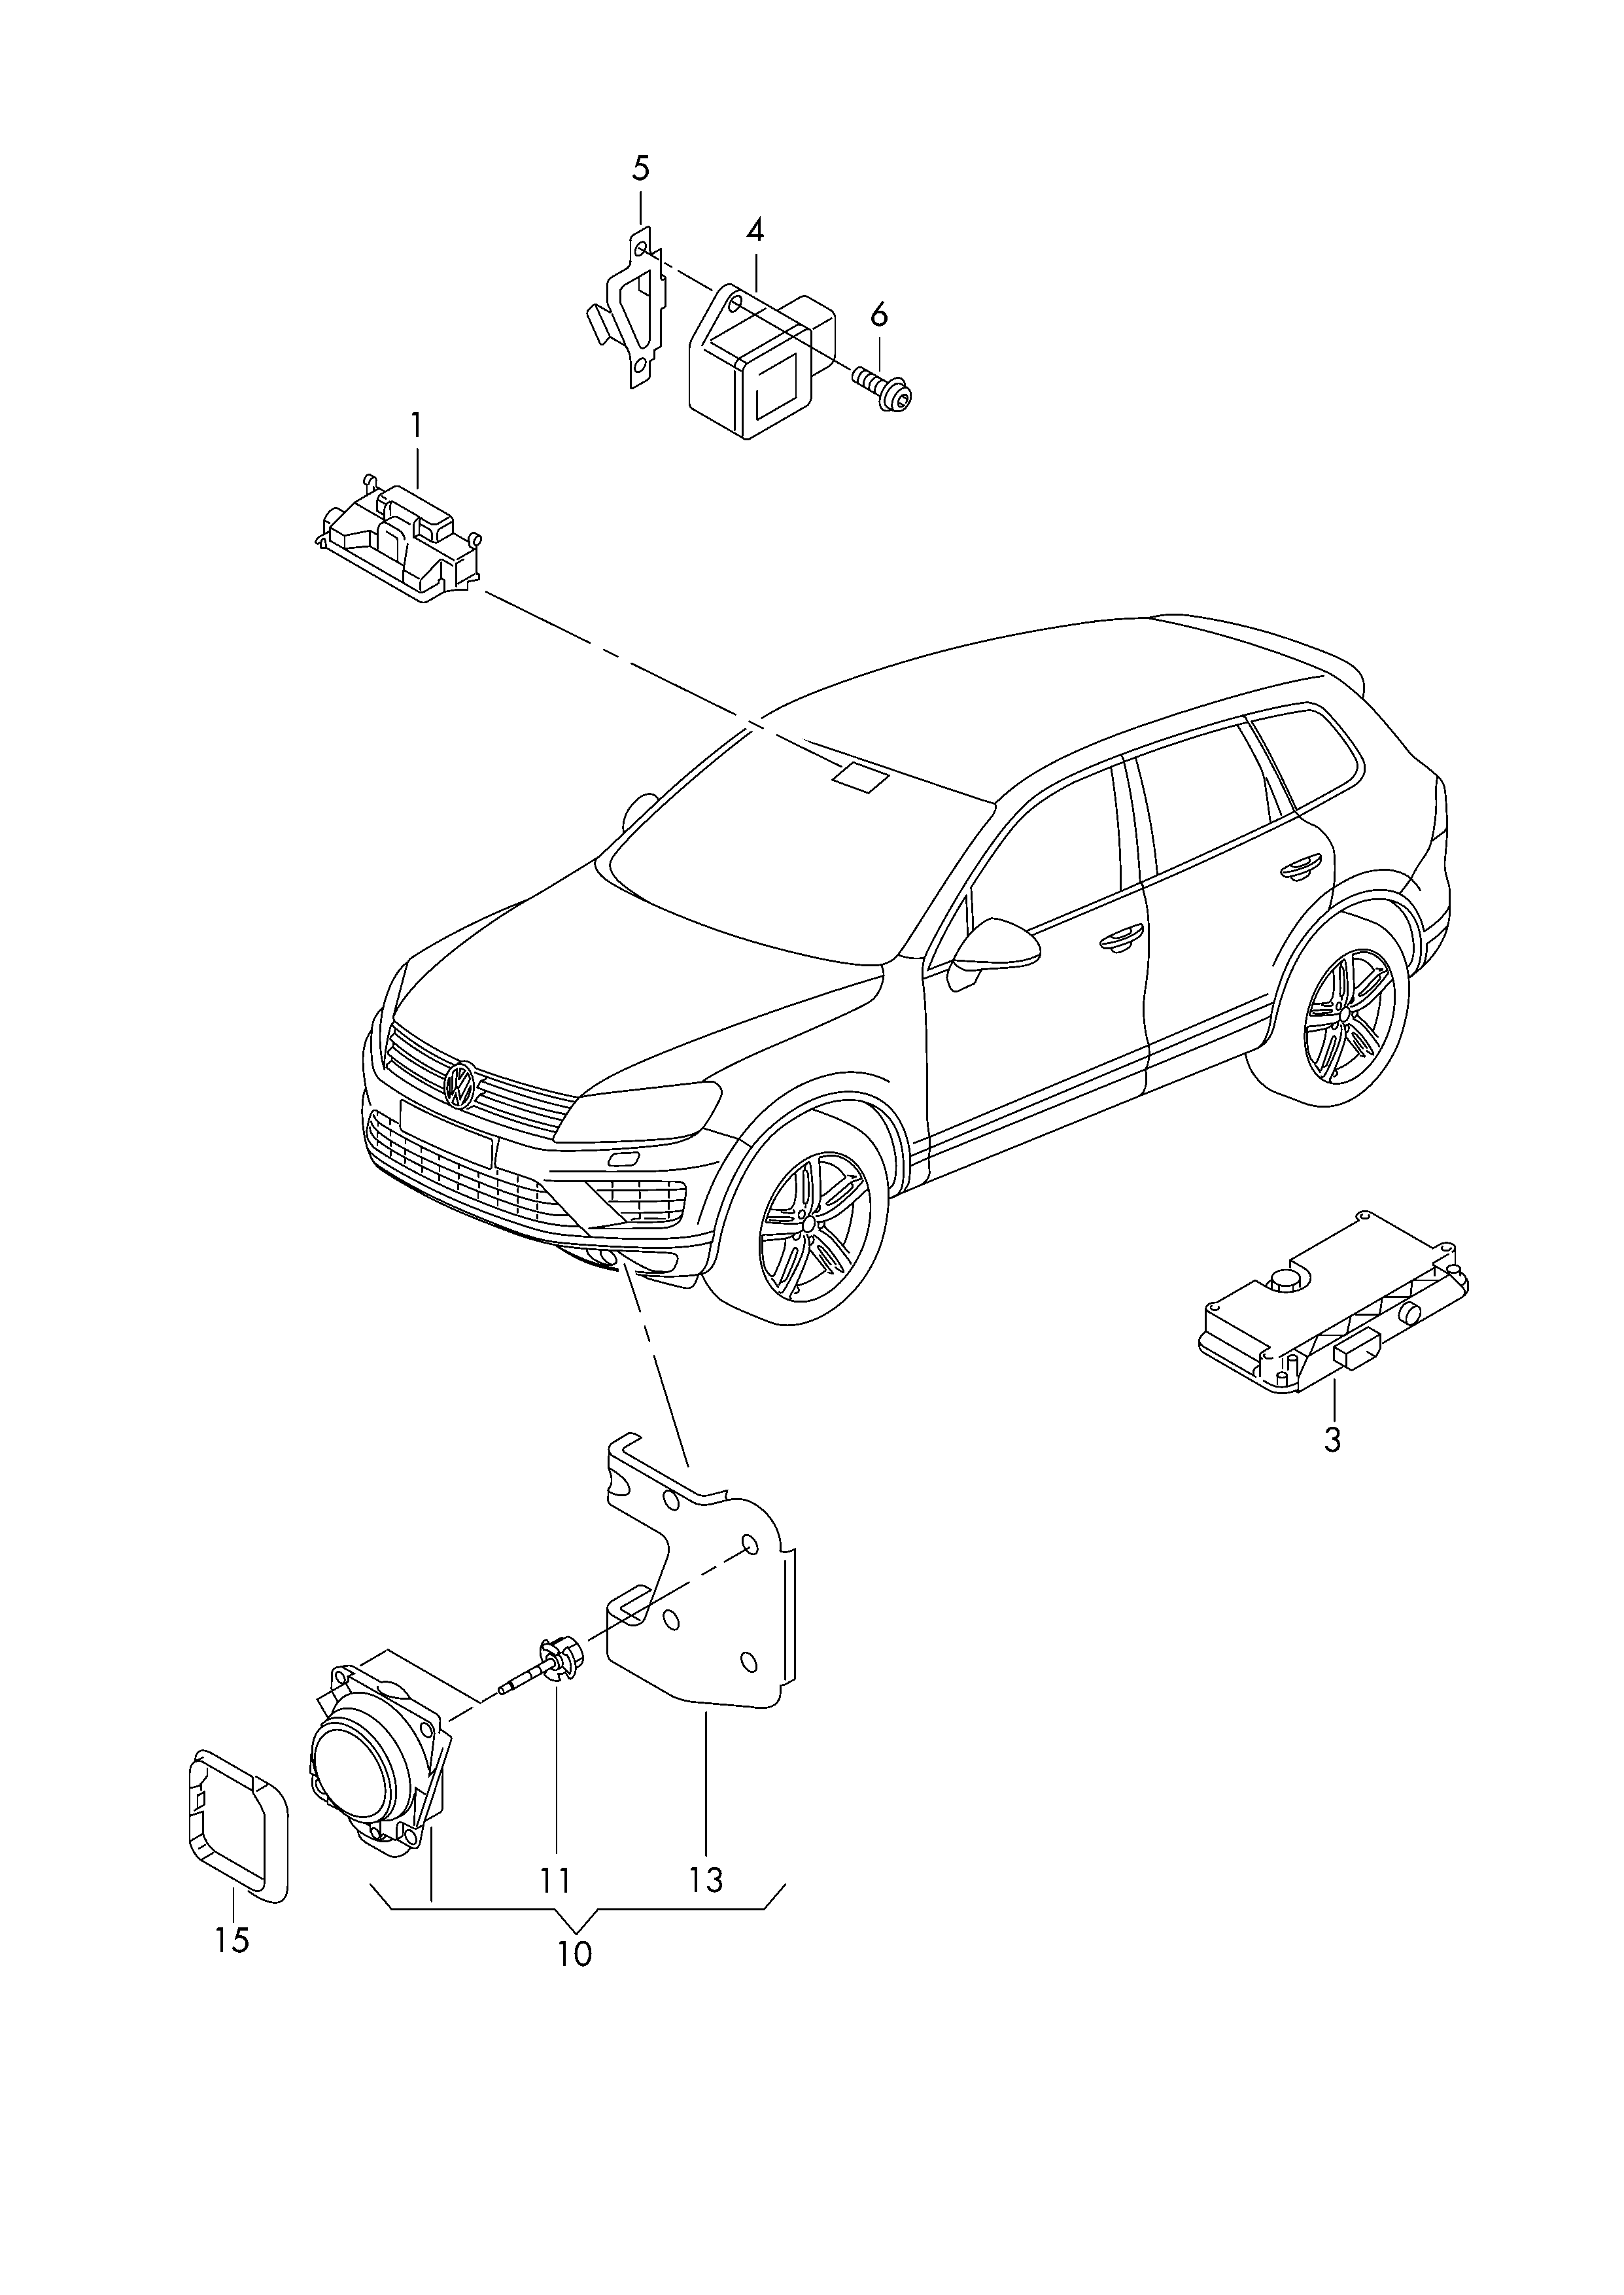 Radarsensorvoor wagens met auto-<br>matische afstandsregeling  - Touareg - toua